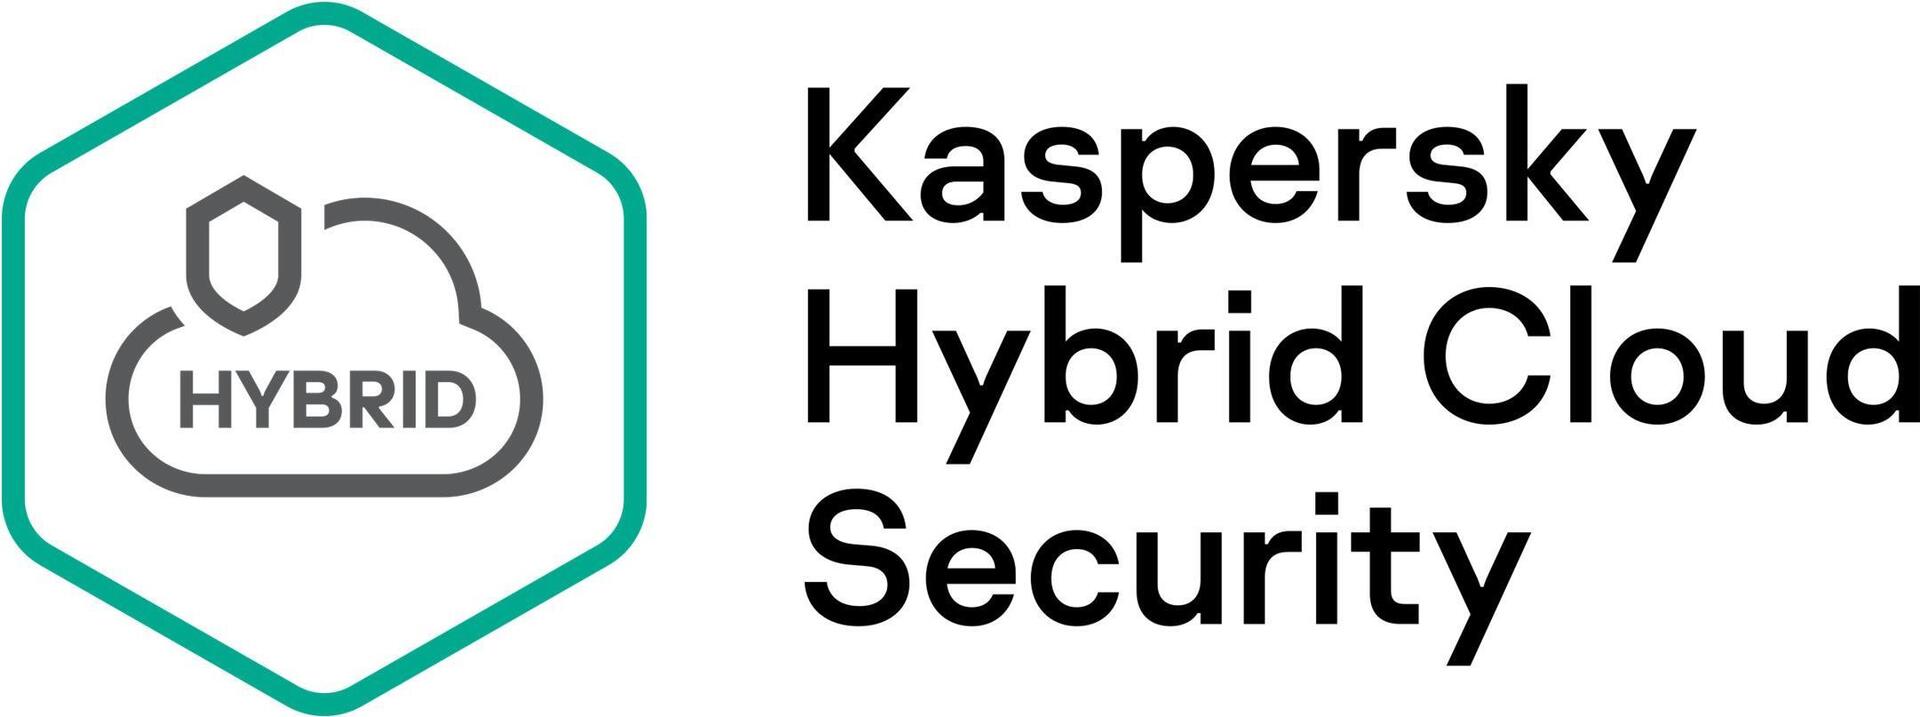 Kaspersky Hybrid Cloud Security (KL4554XADD8)